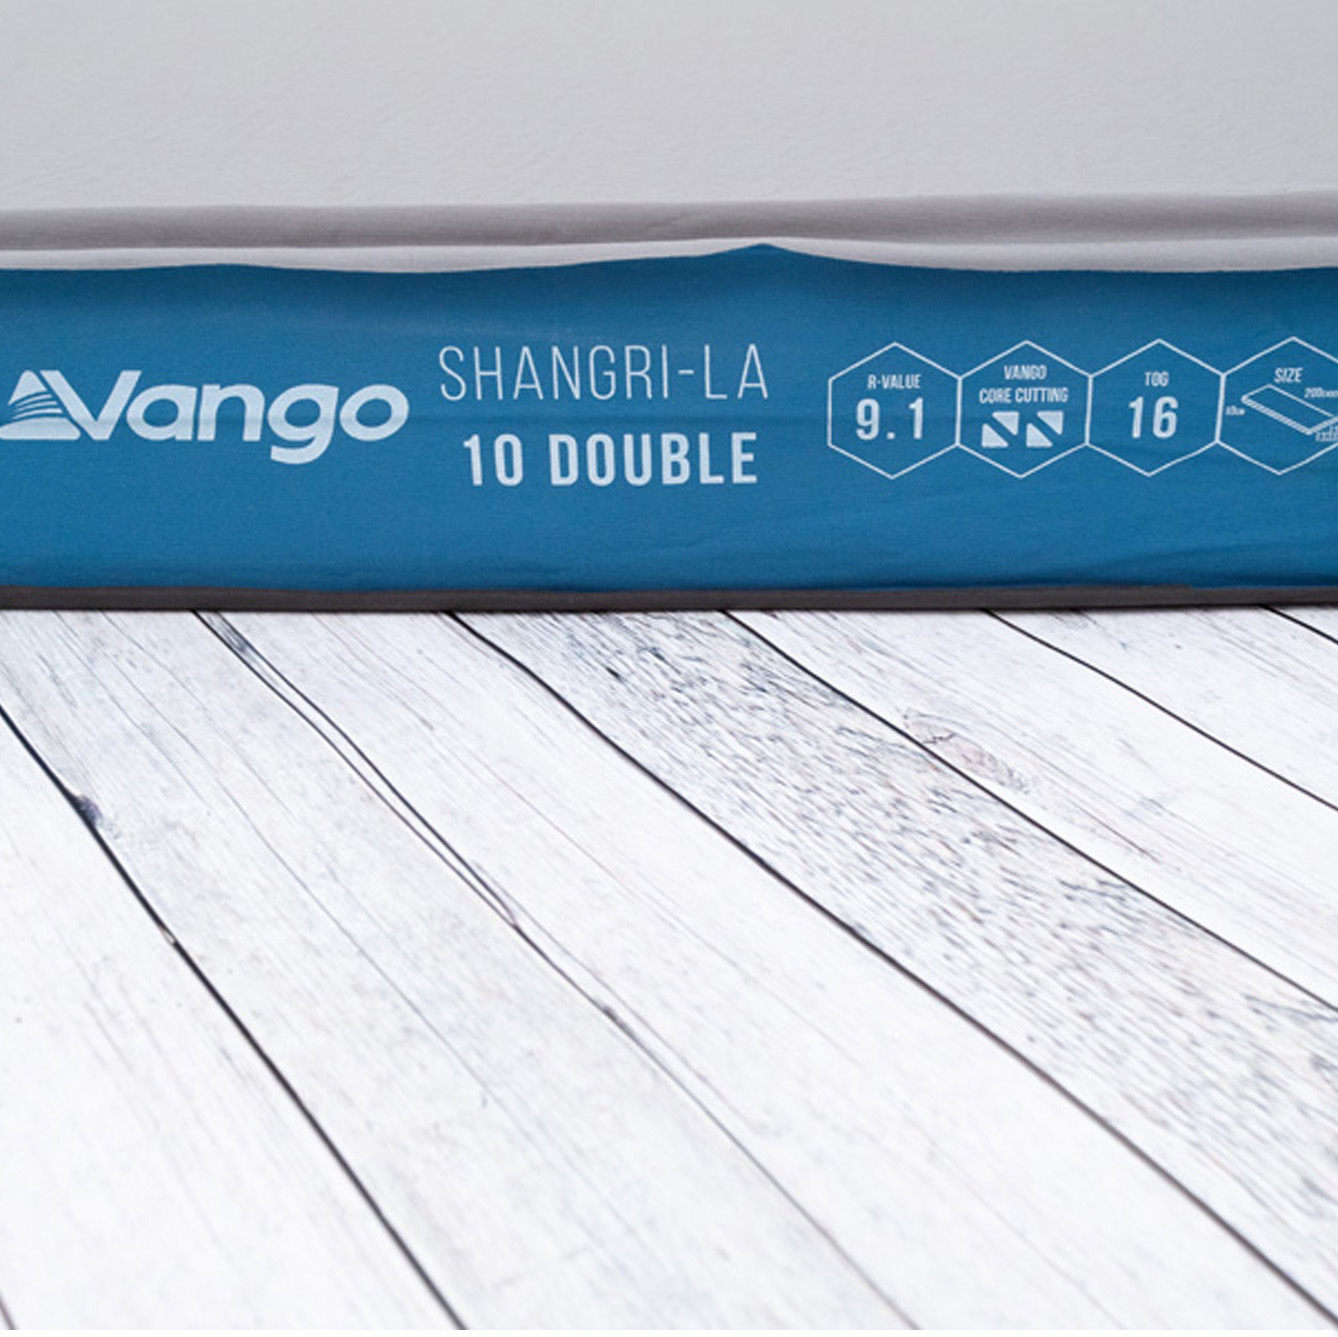 Vango Shangri-La II 10 Double Self Inflating Camping Mat